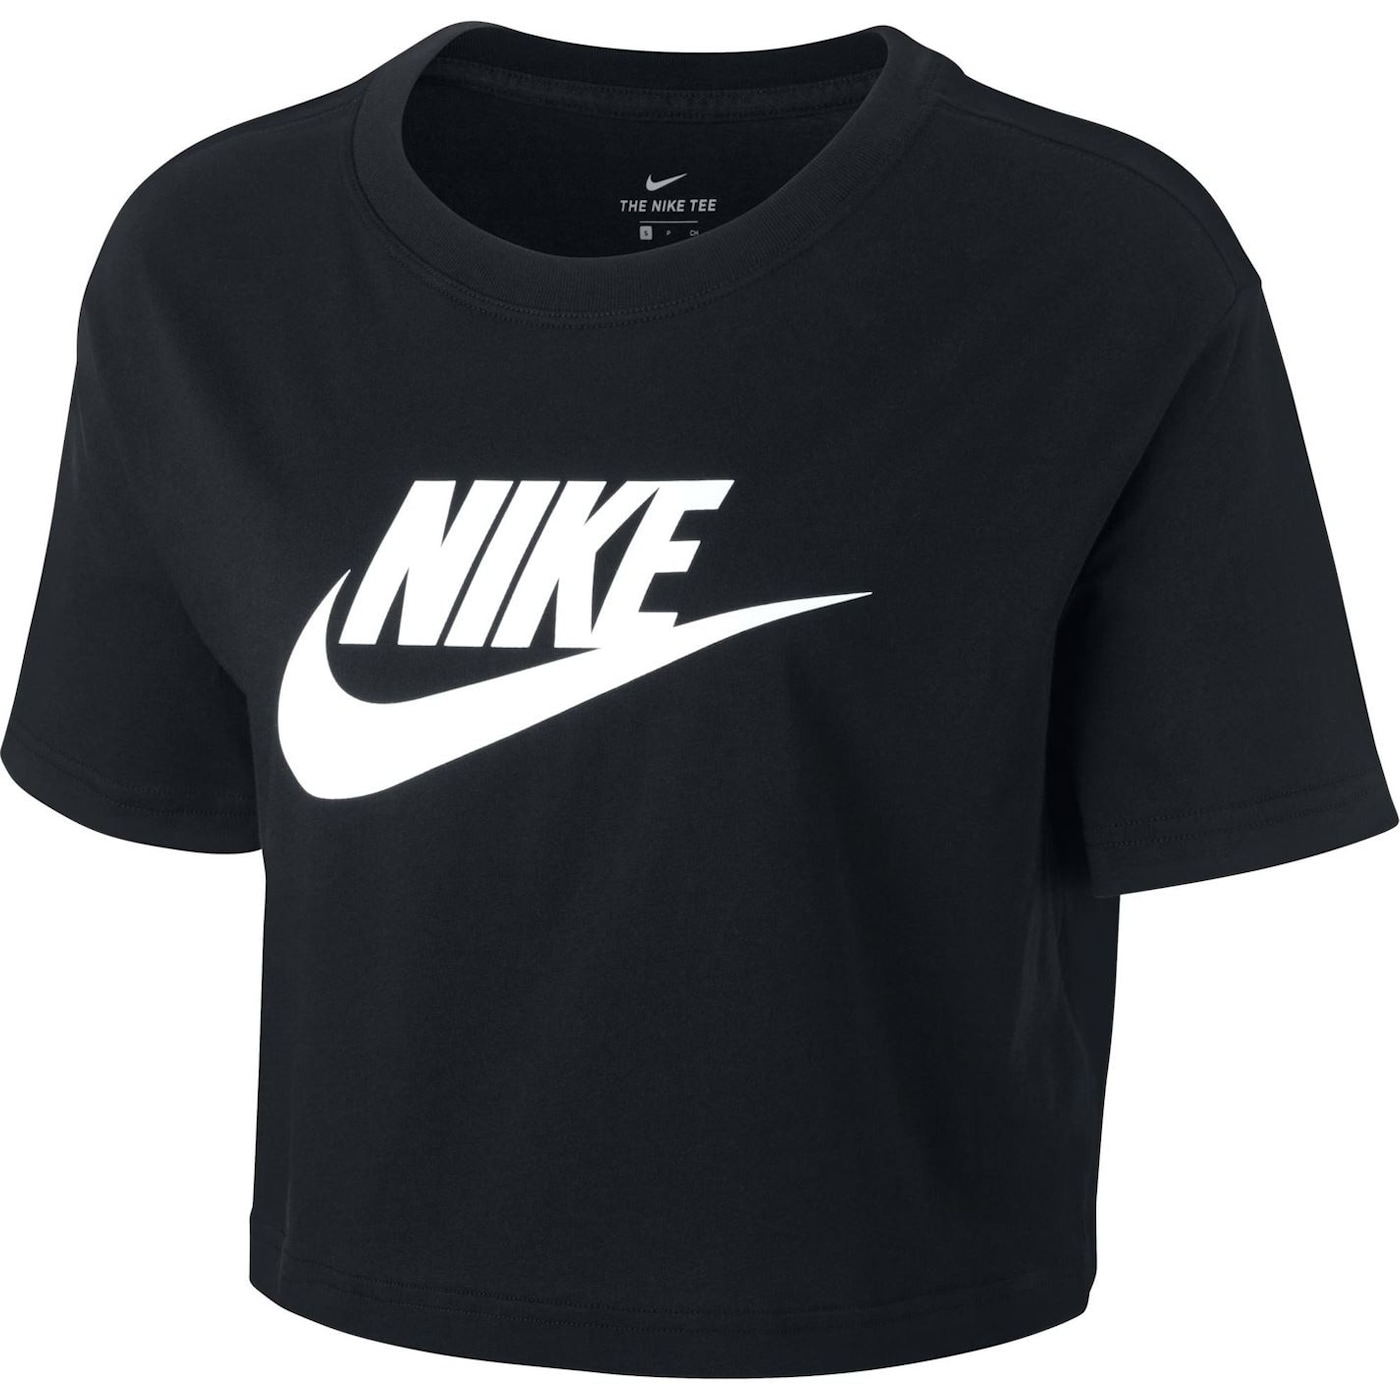 Жени  Дамско облекло  Блузи  Функционални тениски и потници Nike Futura Cropped T-Shirt 1435978-7735018